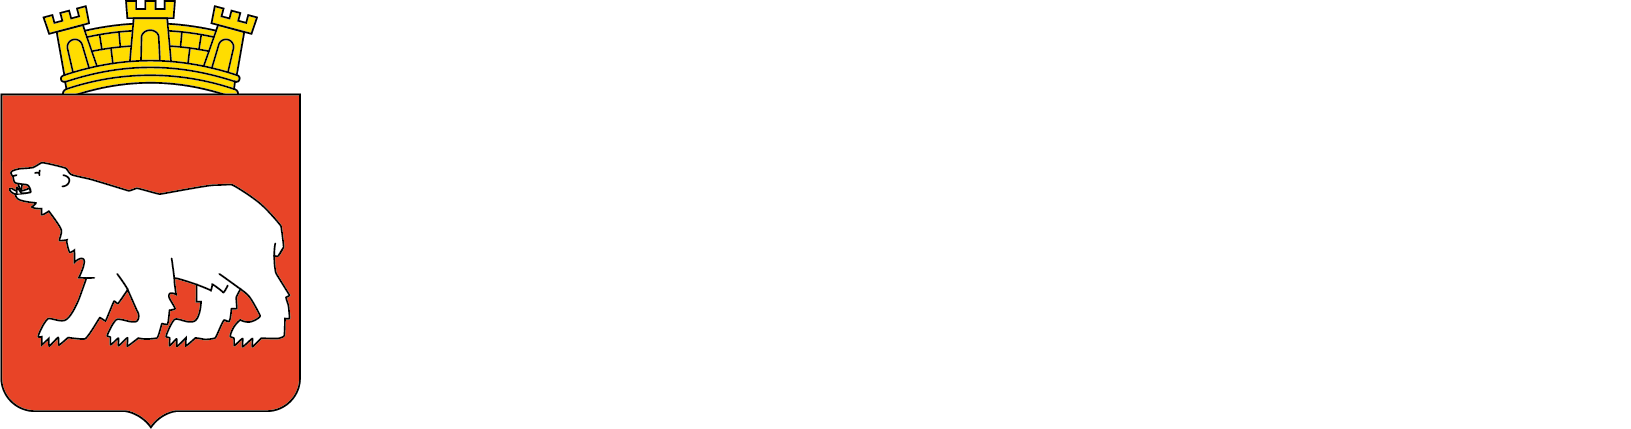 Hammerfest kommune